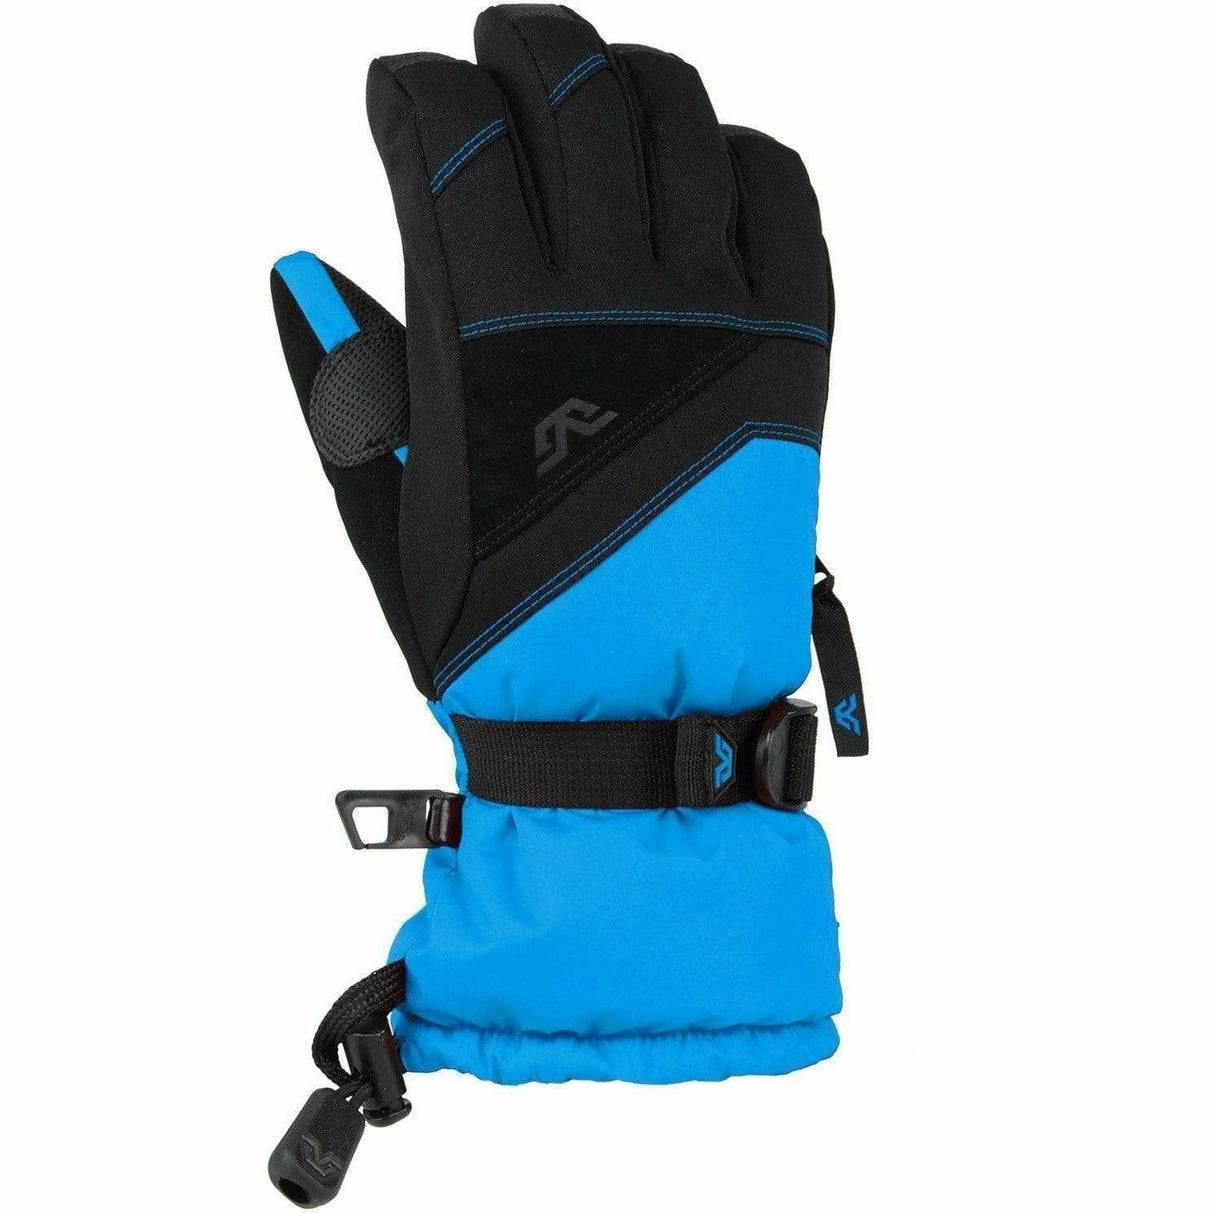 Gordini Junior Stomp III Gloves  -  Medium / Black/Bright Blue